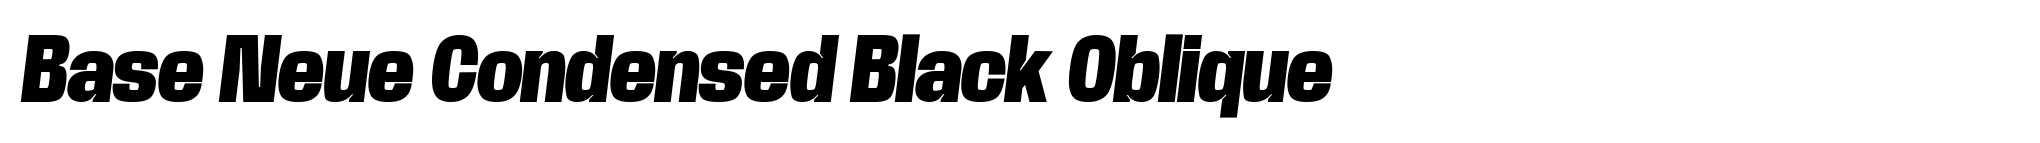 Base Neue Condensed Black Oblique image